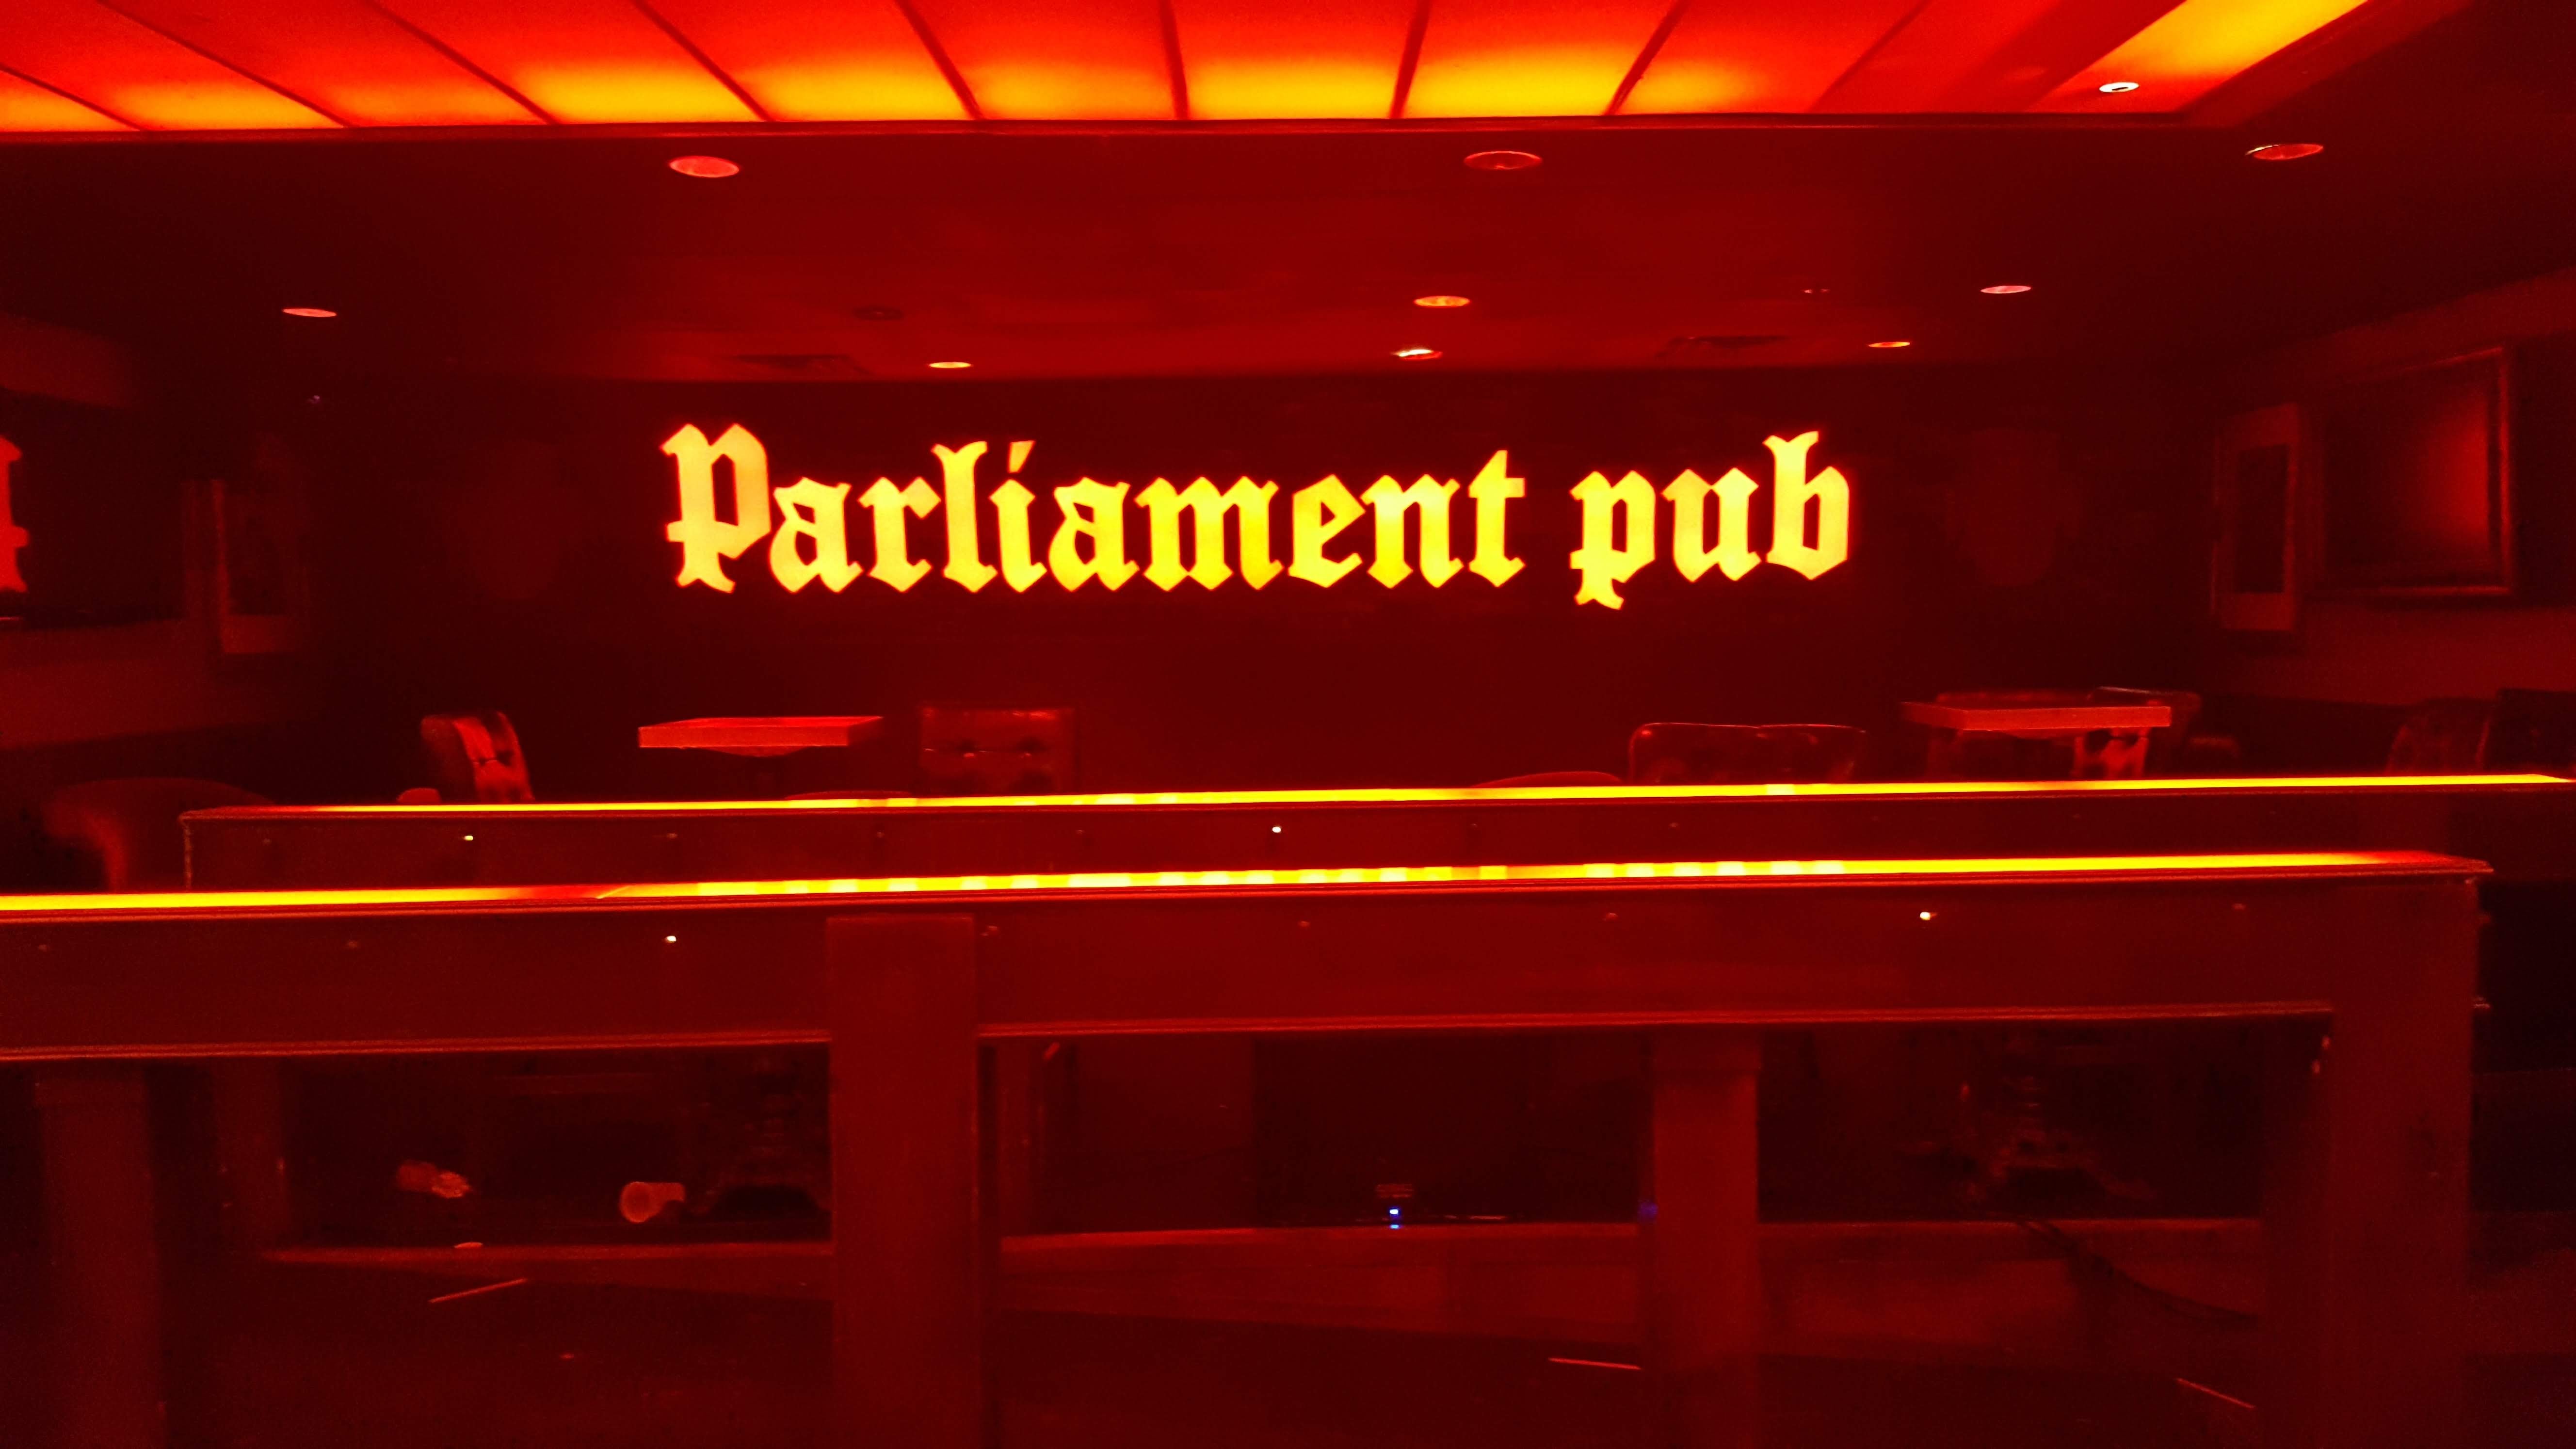 Parliament Pub - Omaha (NE 68102), US, night club